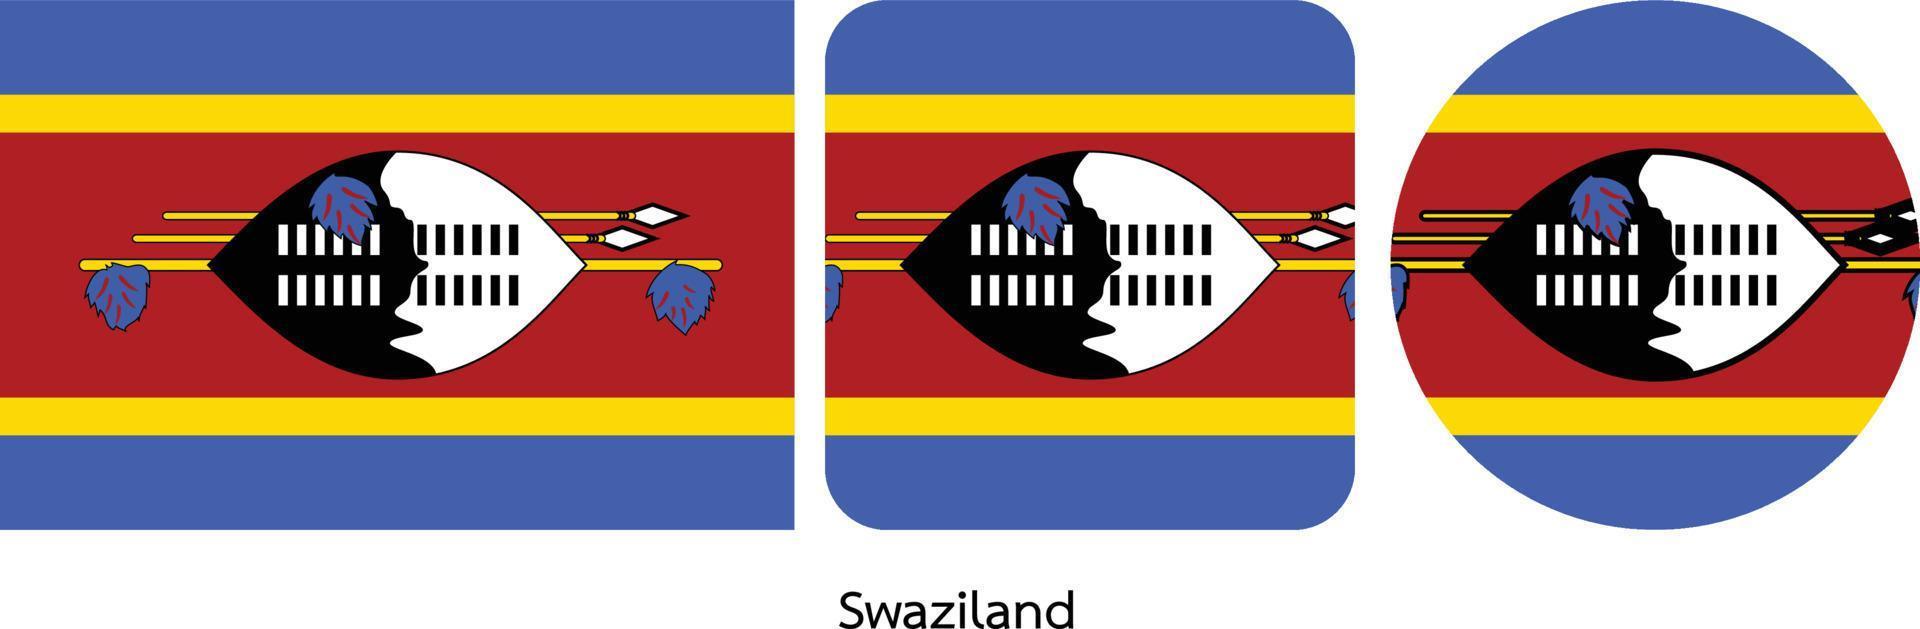 bandera de swazilandia, ilustración vectorial vector